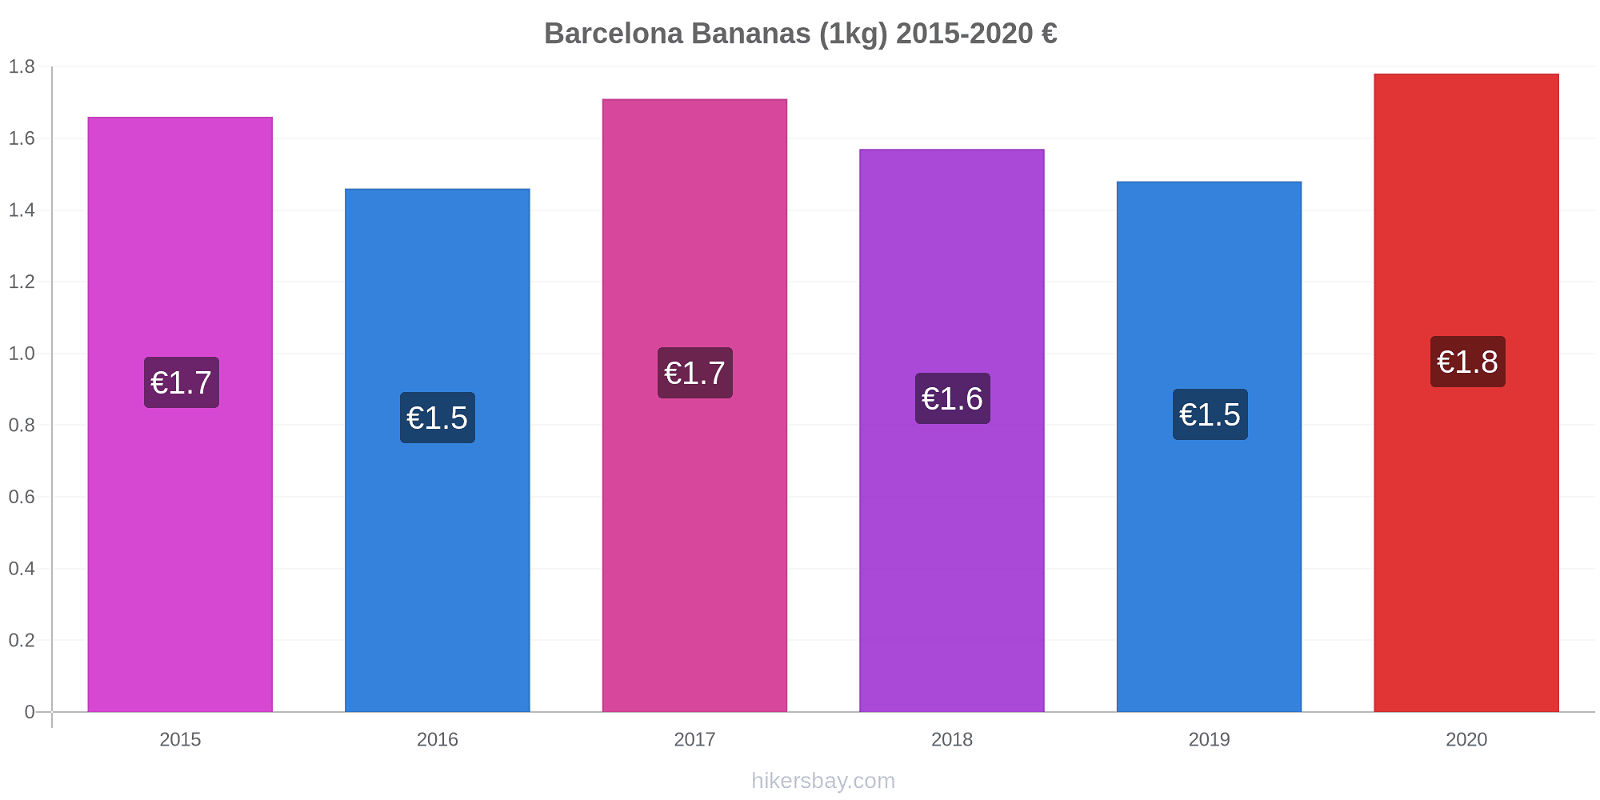 Barcelona variação de preço Banana (1kg) hikersbay.com